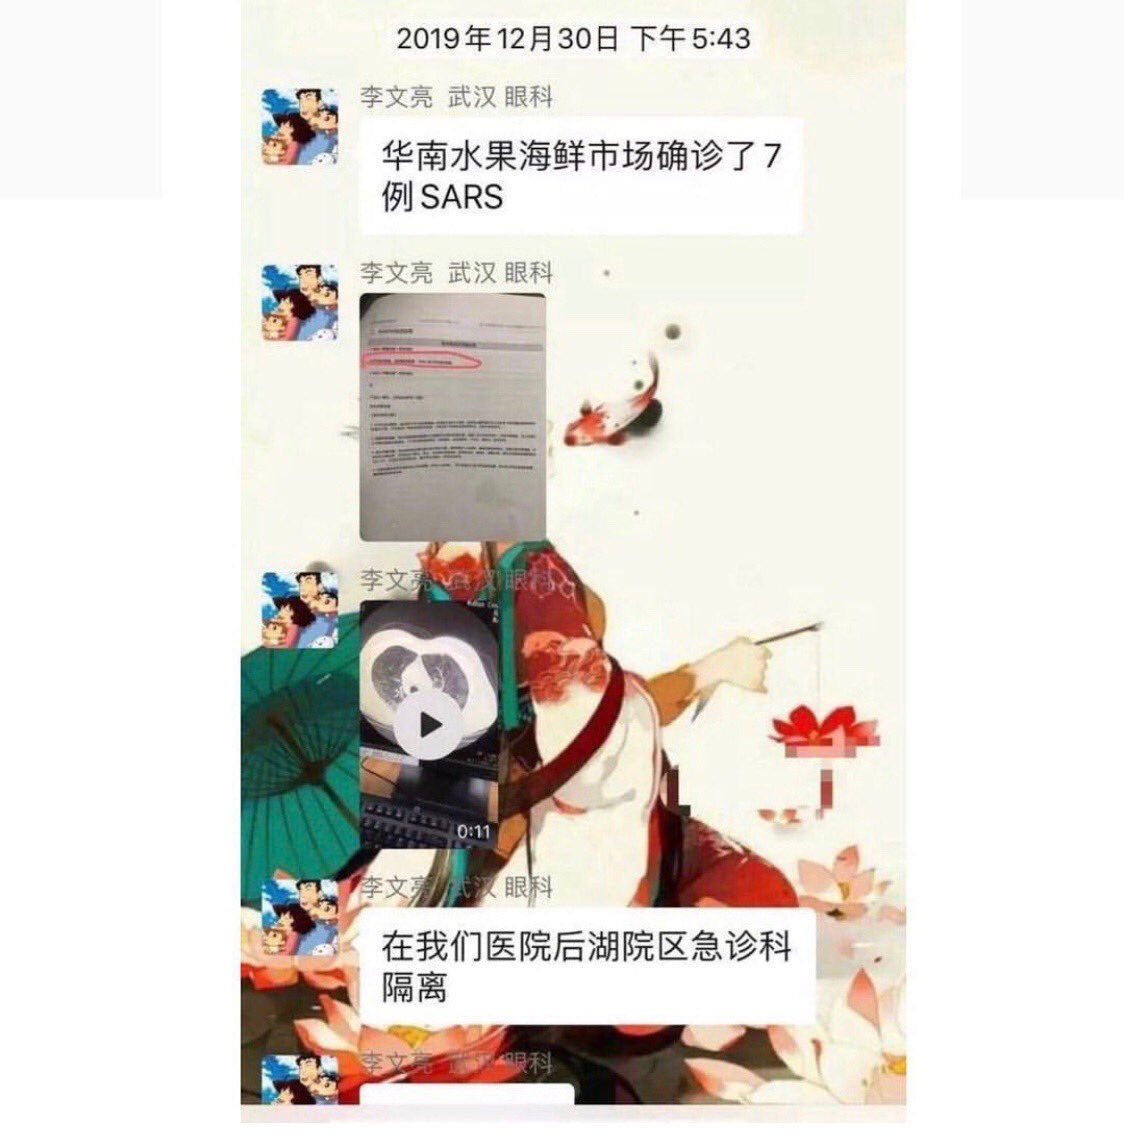 2/8 Nous sommes le 30 décembre 2019. Li, médecin ophtalmologue de 34 ans, témoigne pour la première fois de la propagation d’un coronavirus, auprès d’un groupe d’anciens étudiants de l’école de médecine. Il fait ses révélations à ses amis sur l’application WeChat.